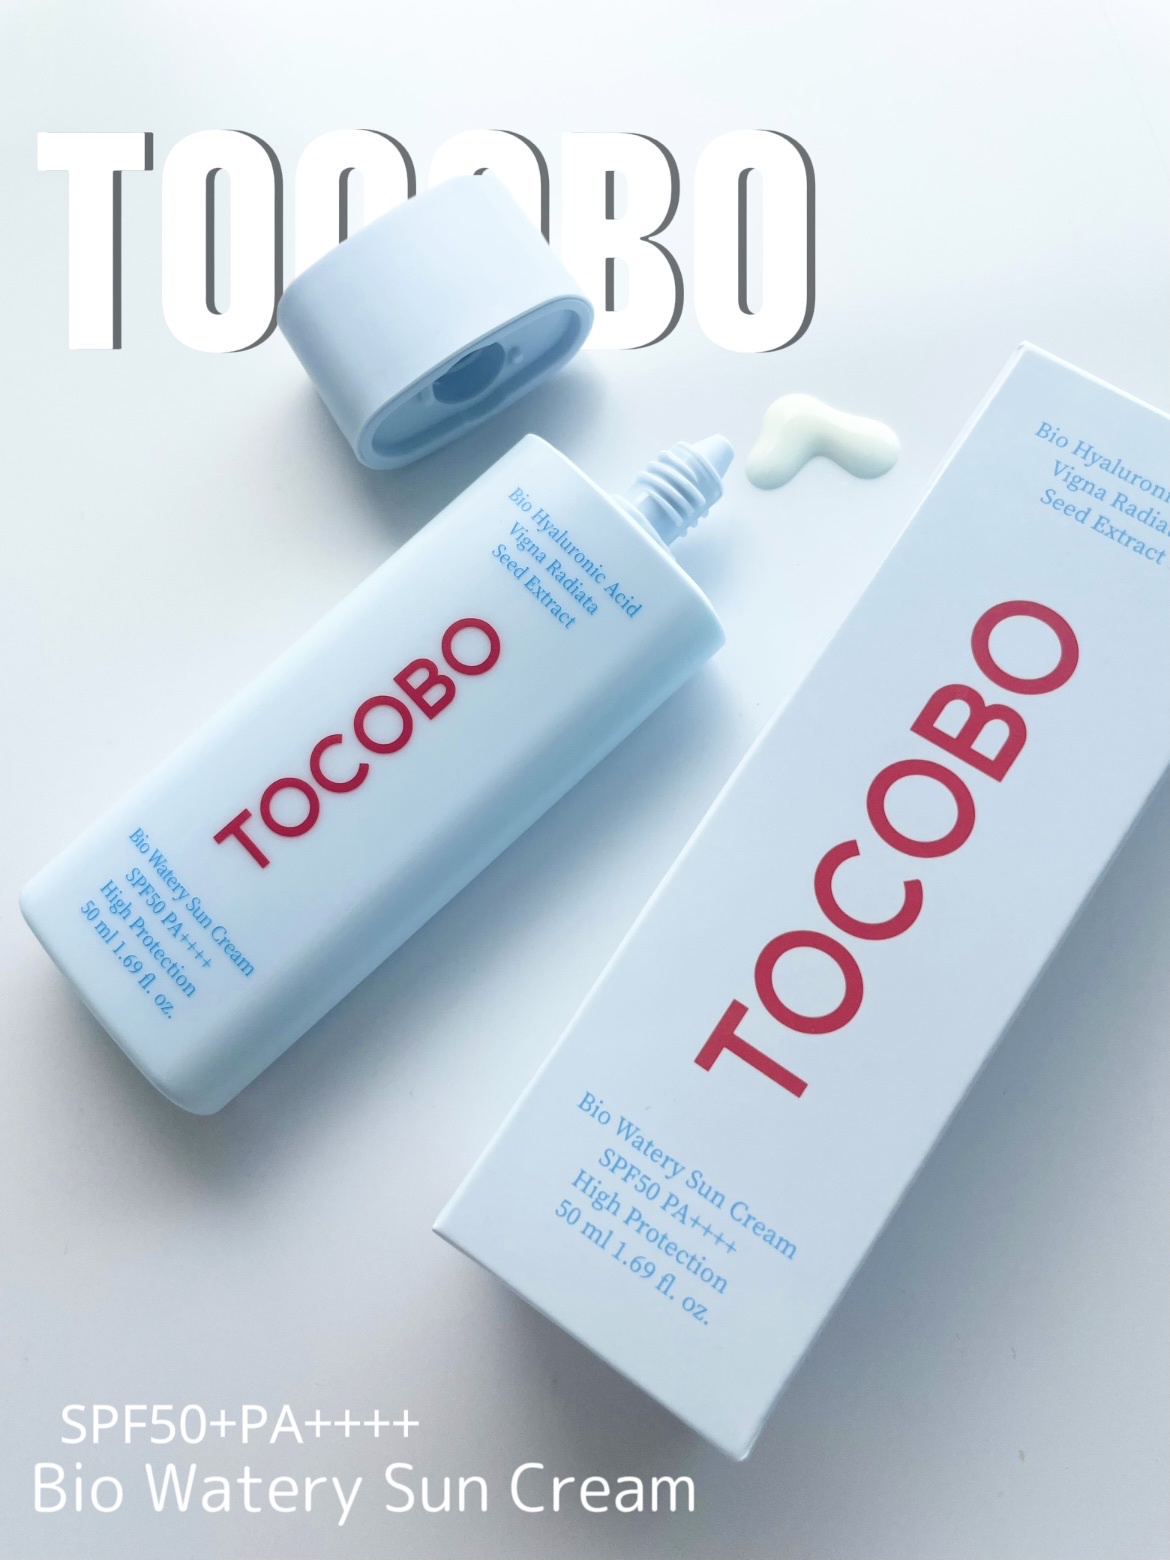 TOCOBO / バイオ ウォータリー サンクリームのバリエーション情報